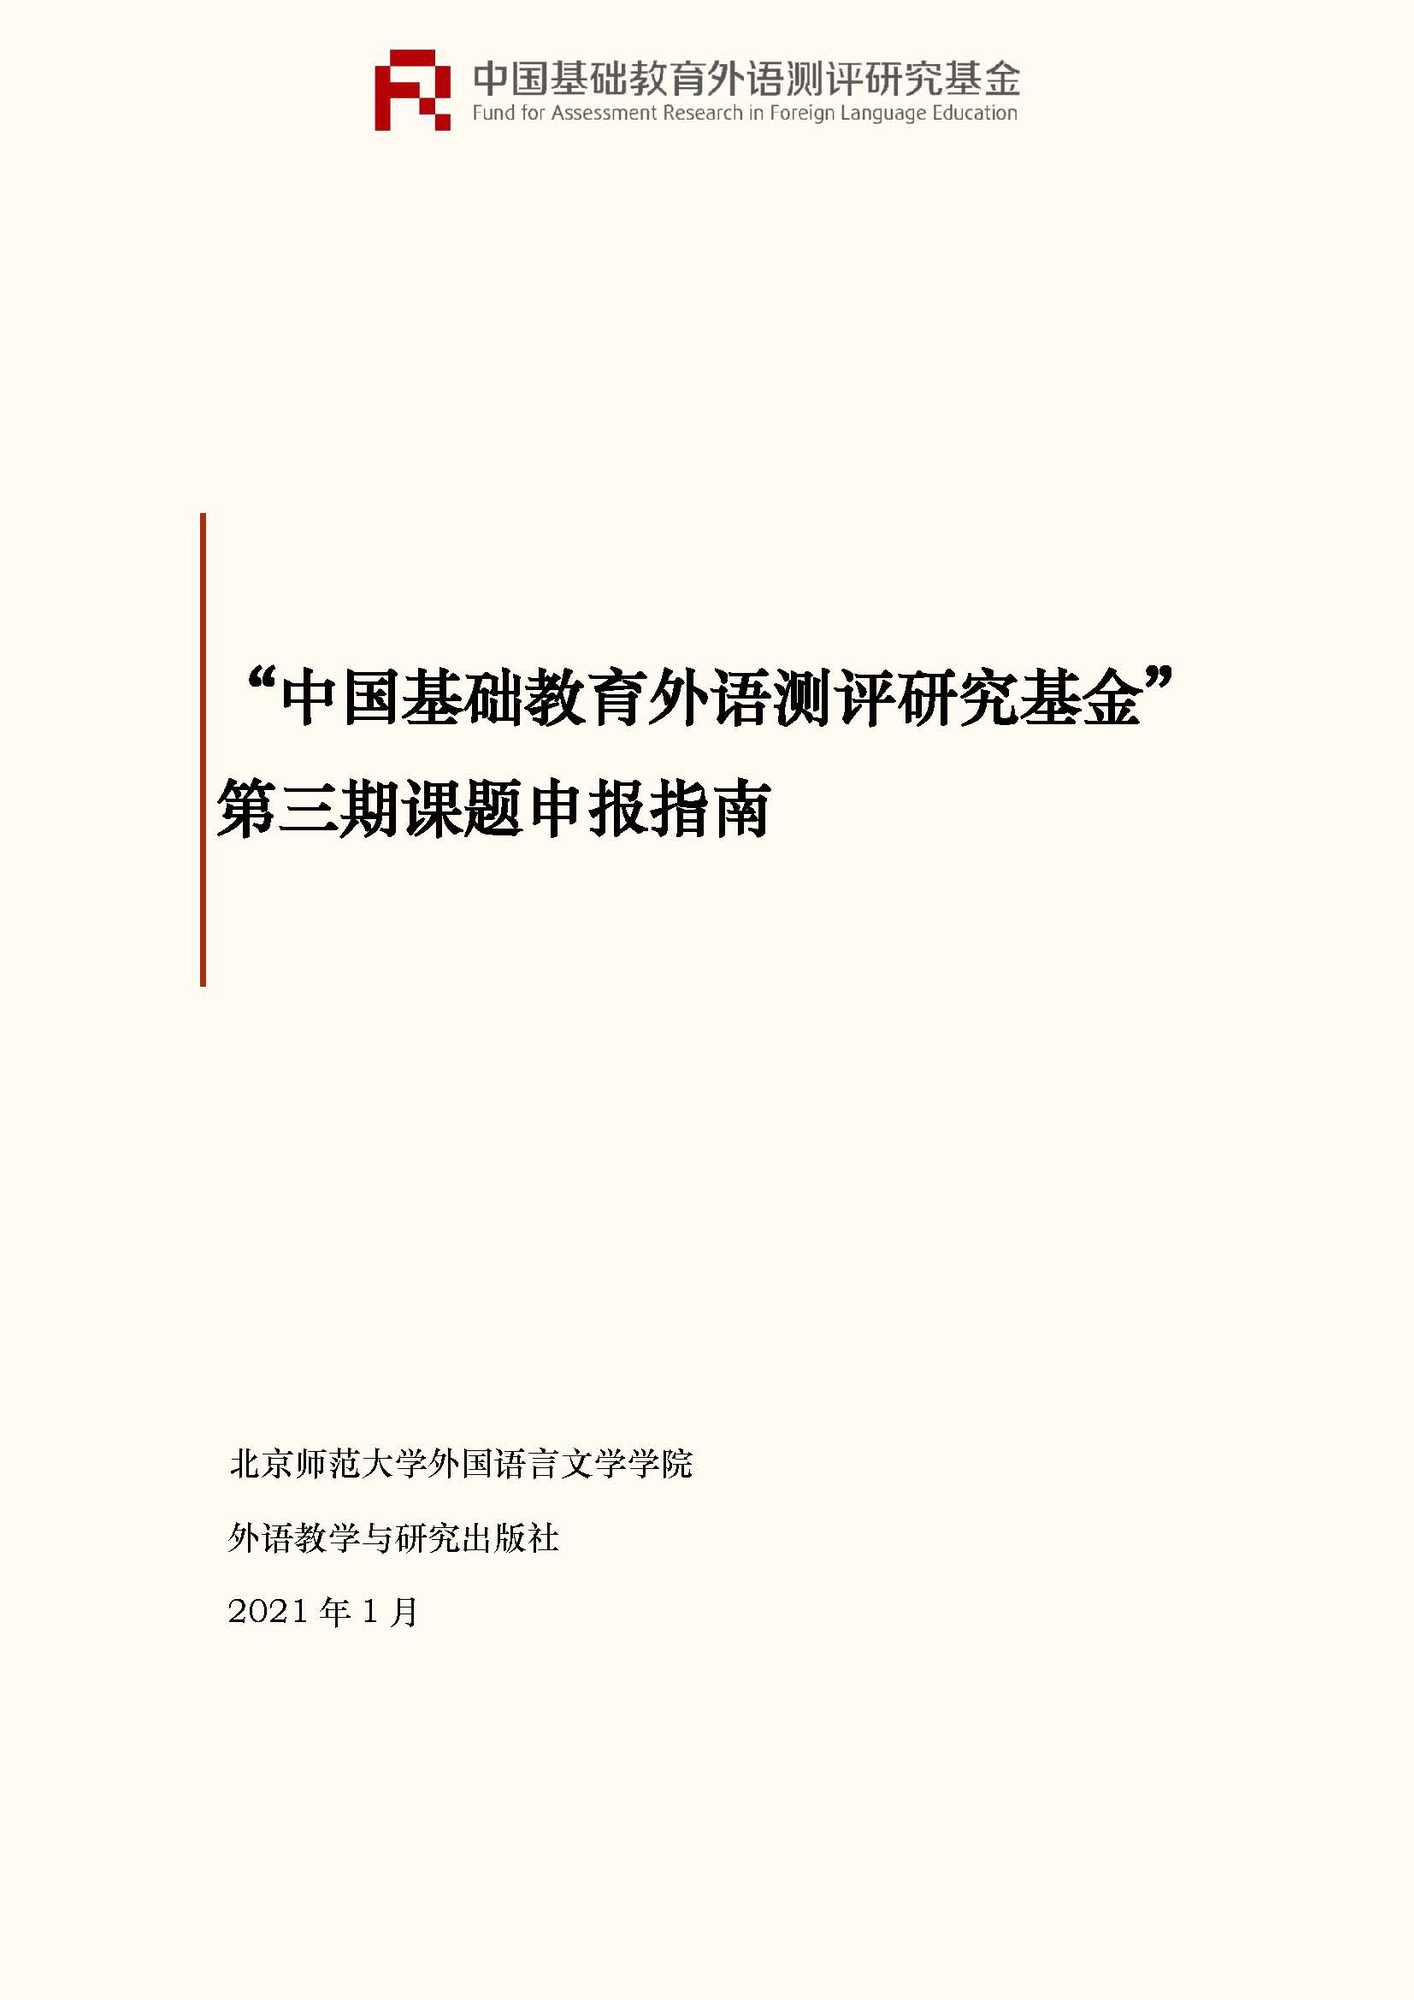 文件1：“中国基础教育外语测评研究基金”第三期课题申报指南_页面_01